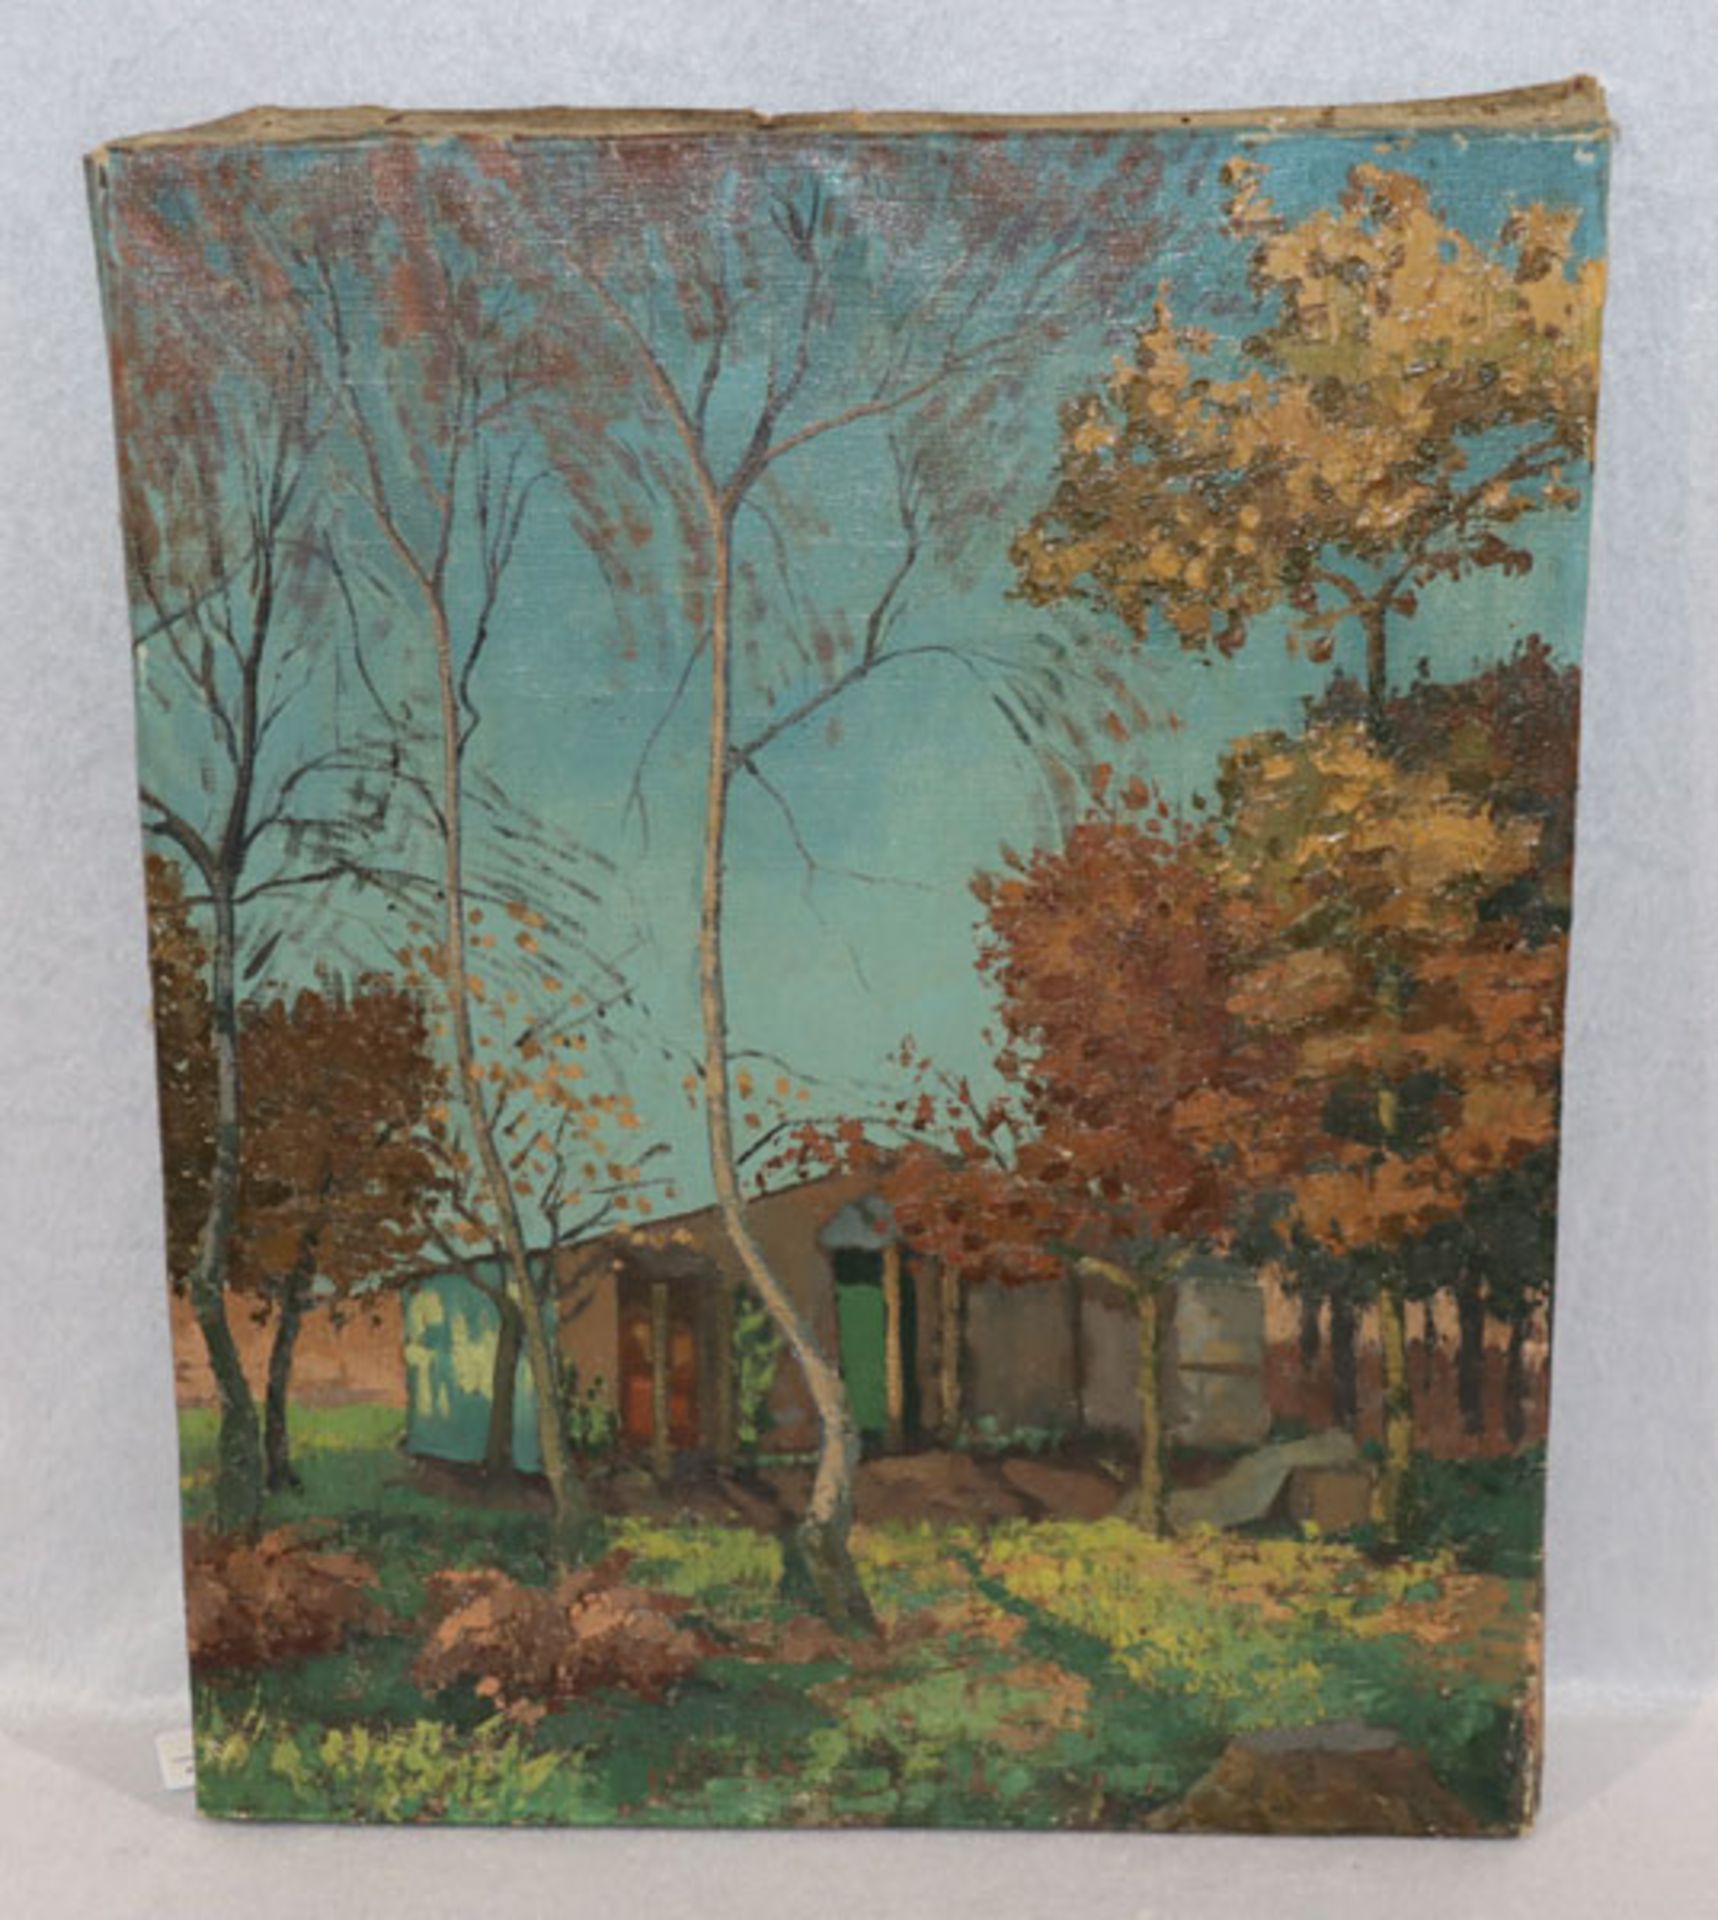 Gemälde ÖL/LW 'Haus im Herbstwald', attr. Minet, Louis Emile, ohne Rahmen 51 cm x 41 cm (00093)